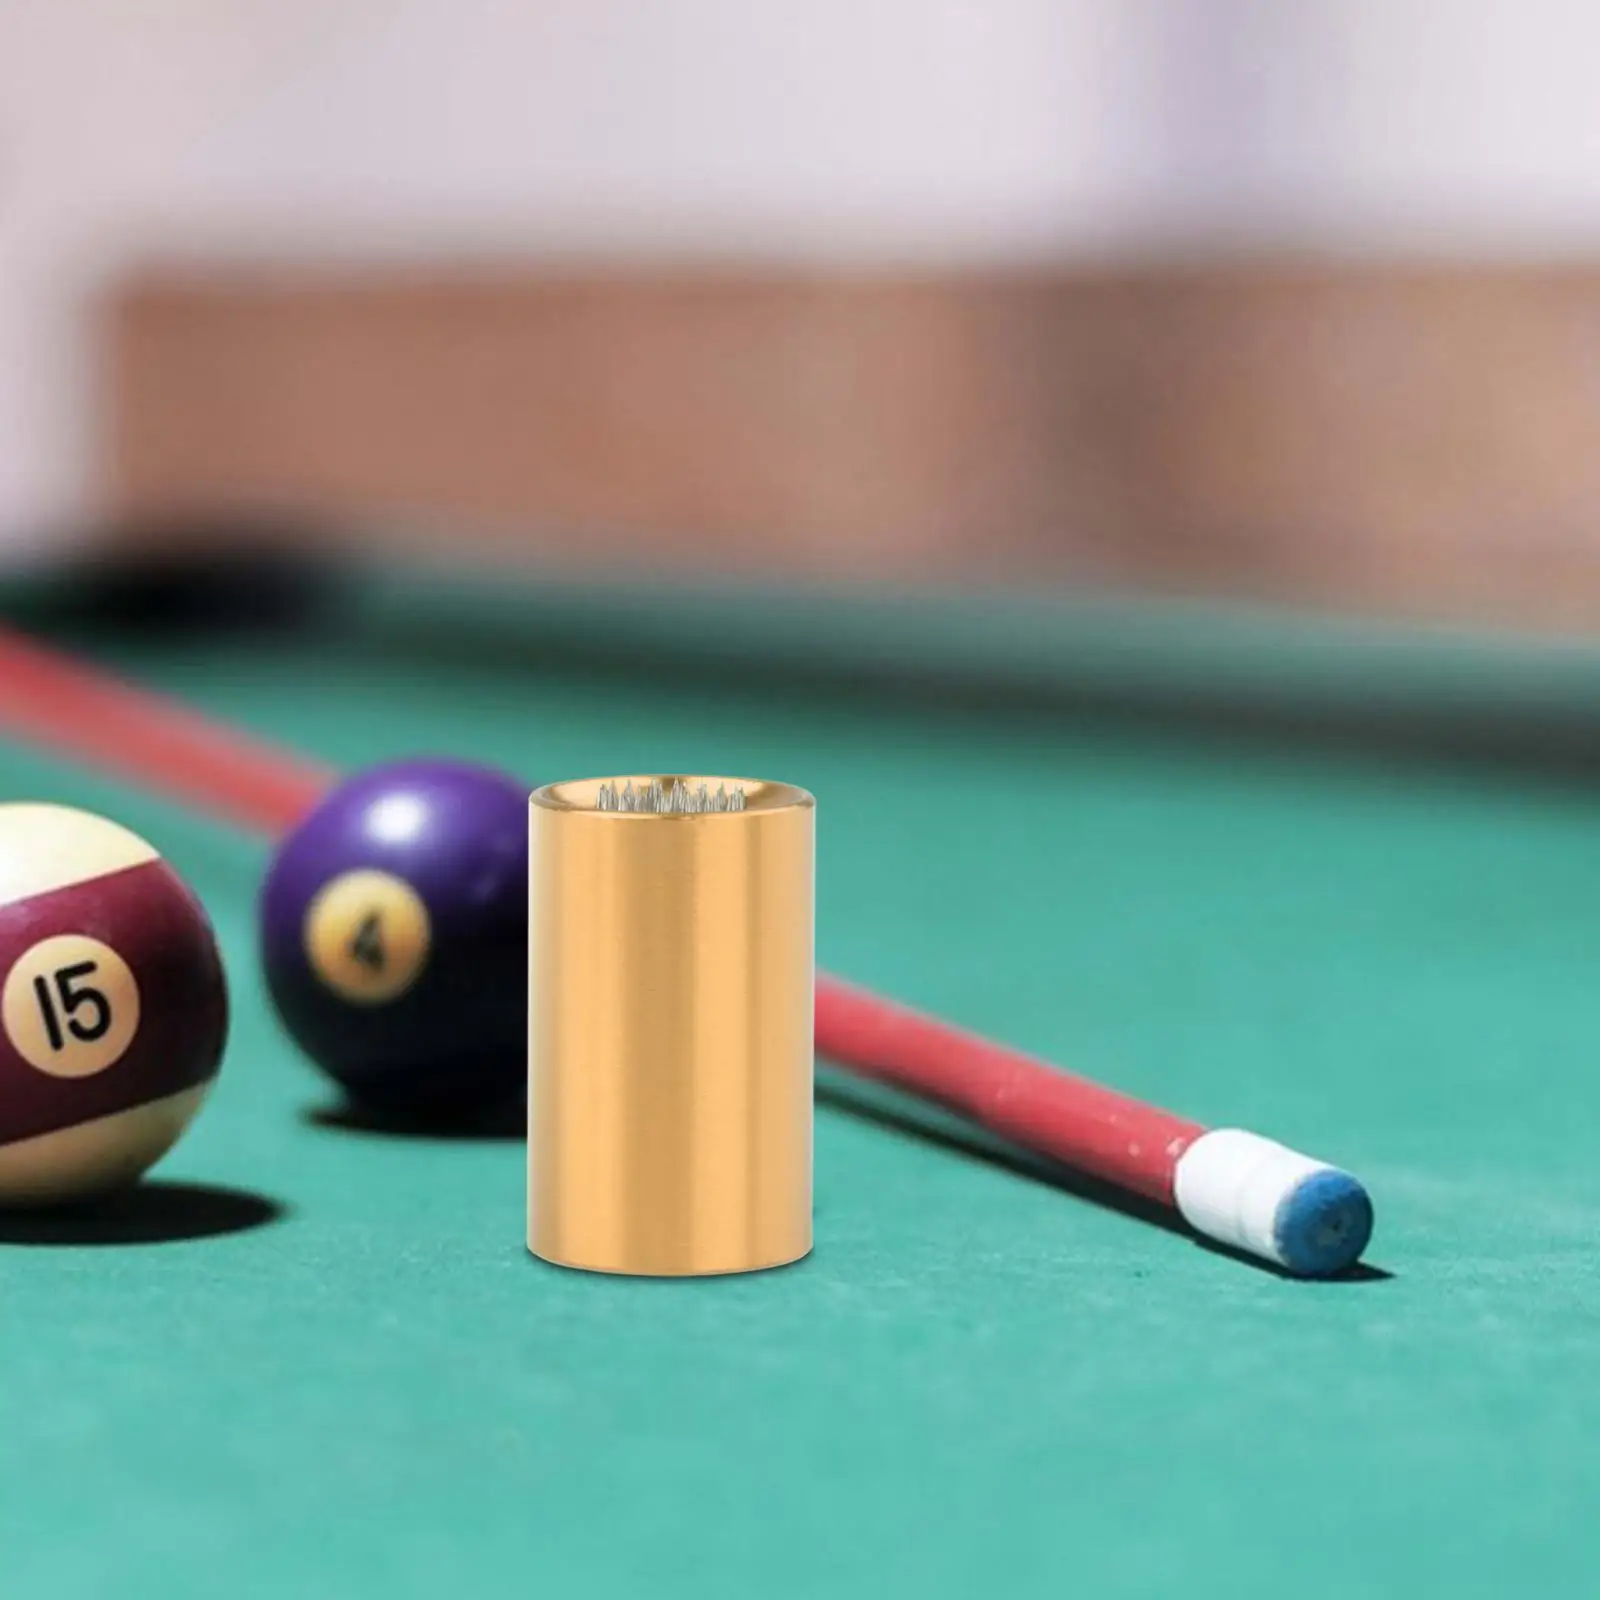 Snooker Cue Tip Shaper Pool Cue Tip Repair Tool 2 in 1 Multipurpose Premium Cue Stick Shaper Aerator Billiards Accessories